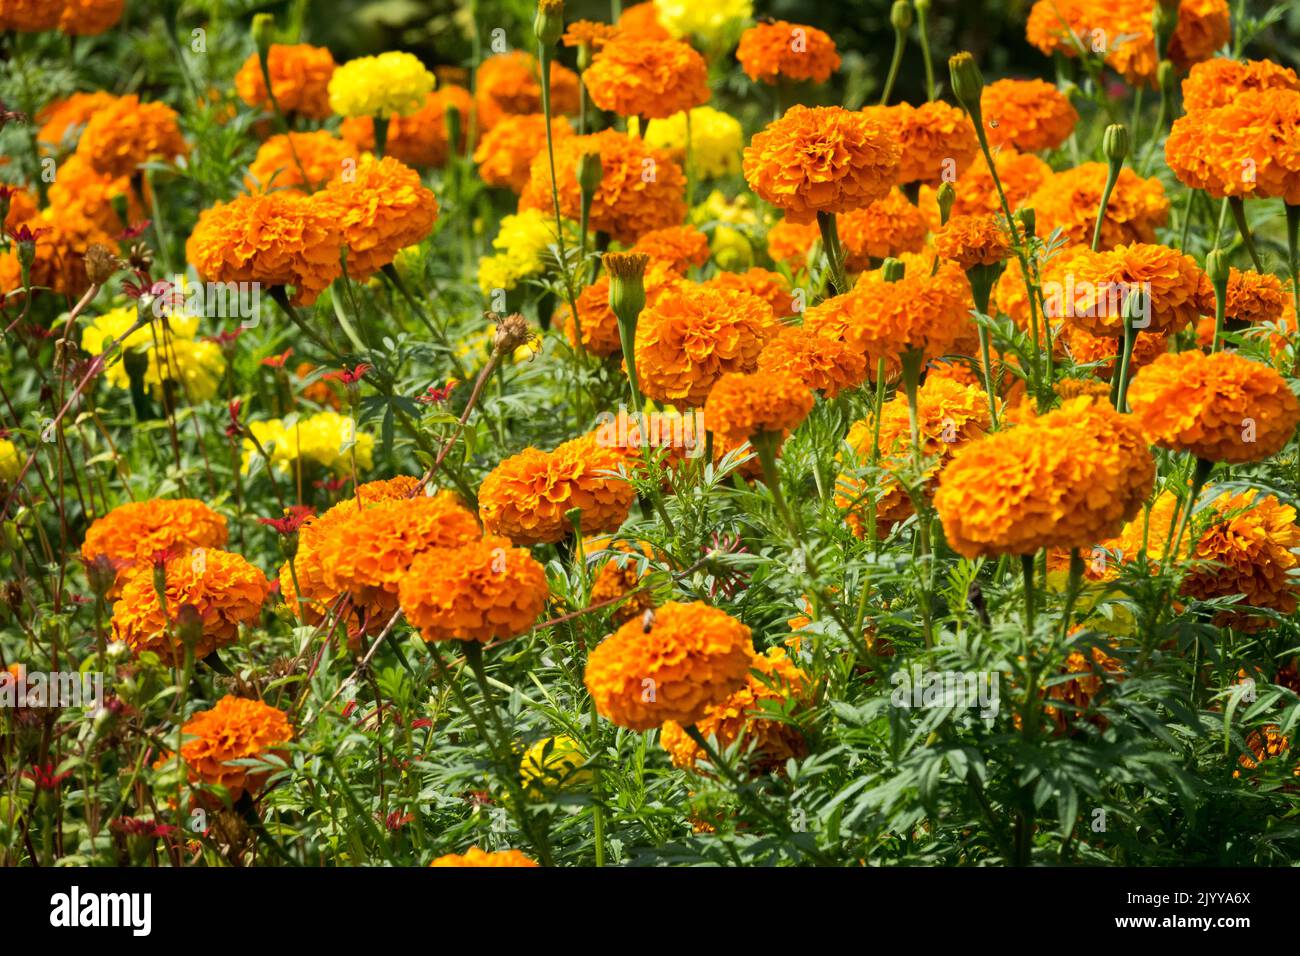 Orange Blumenbeet Afrikanische Ringelblumen Tagesetes erecta, krautige Annualpflanzen, Blumenbeet im Spätsommer, Ringelblumen, Blumen Stockfoto